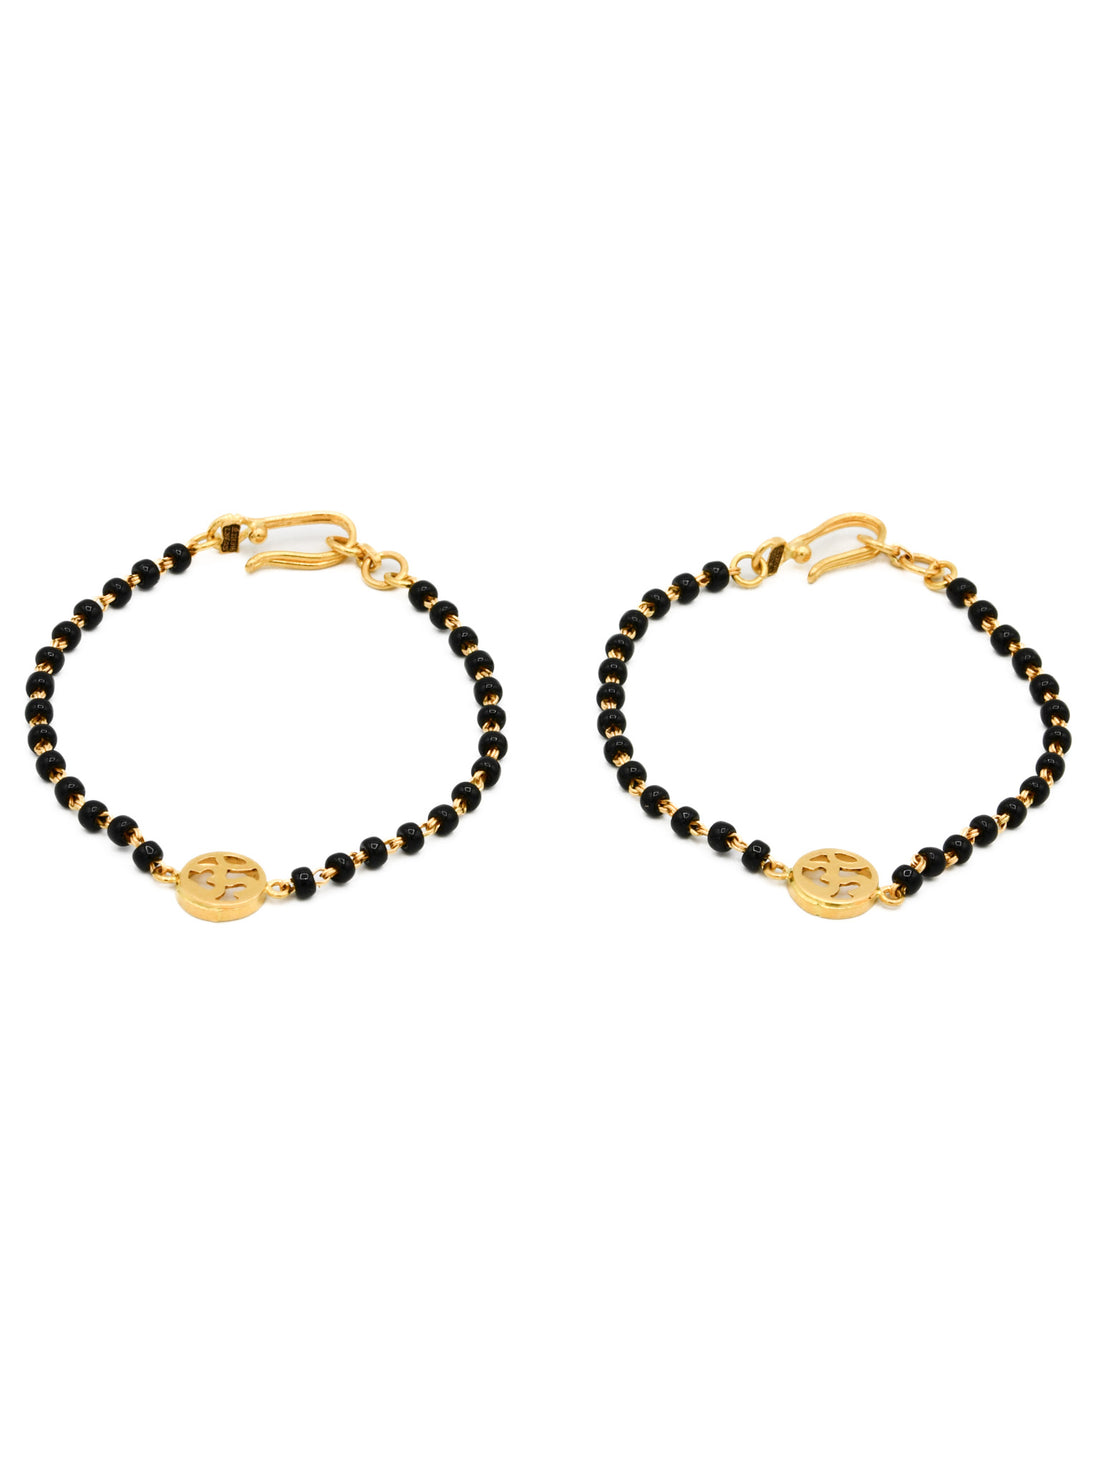 22ct Gold Om Black Beads Pair Baby Bracelet - Roop Darshan